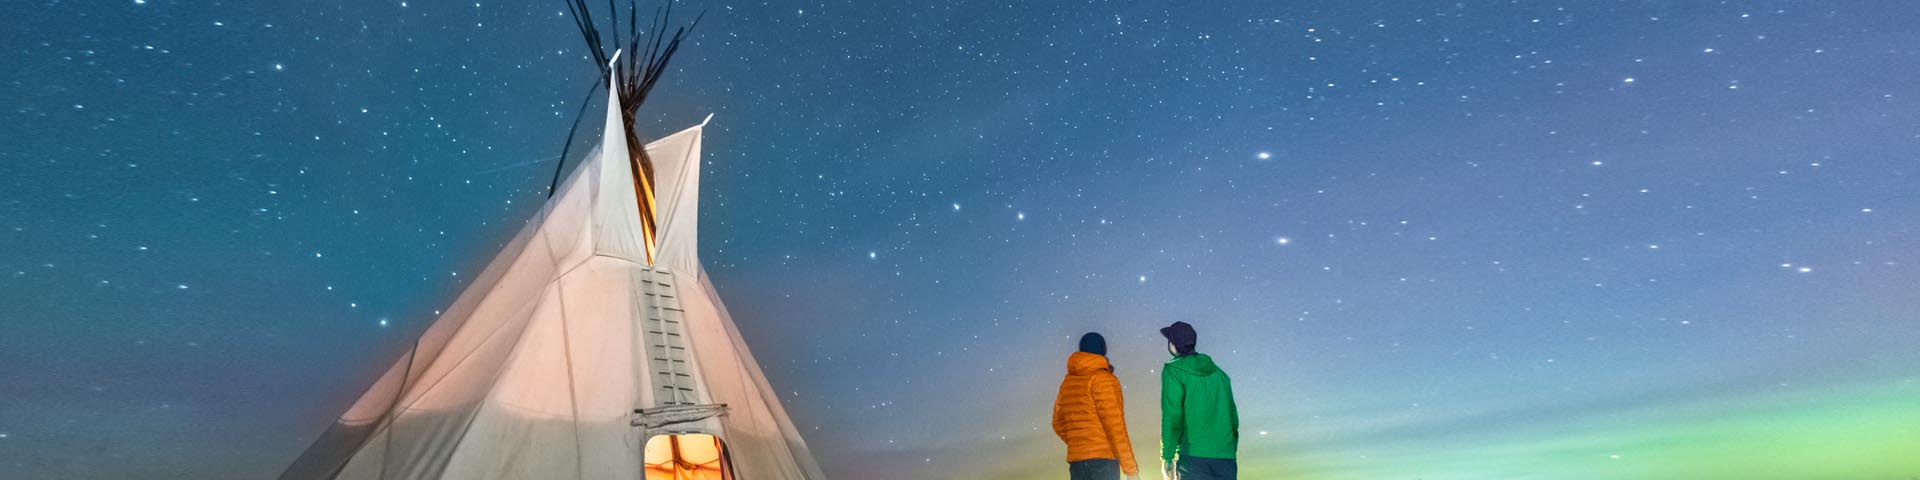 Deux visiteurs à l’extérieur d’un tipi admirent la Grande Ourse lors d'une nuit étoilée au lieu historique national Rocky Mountain House.